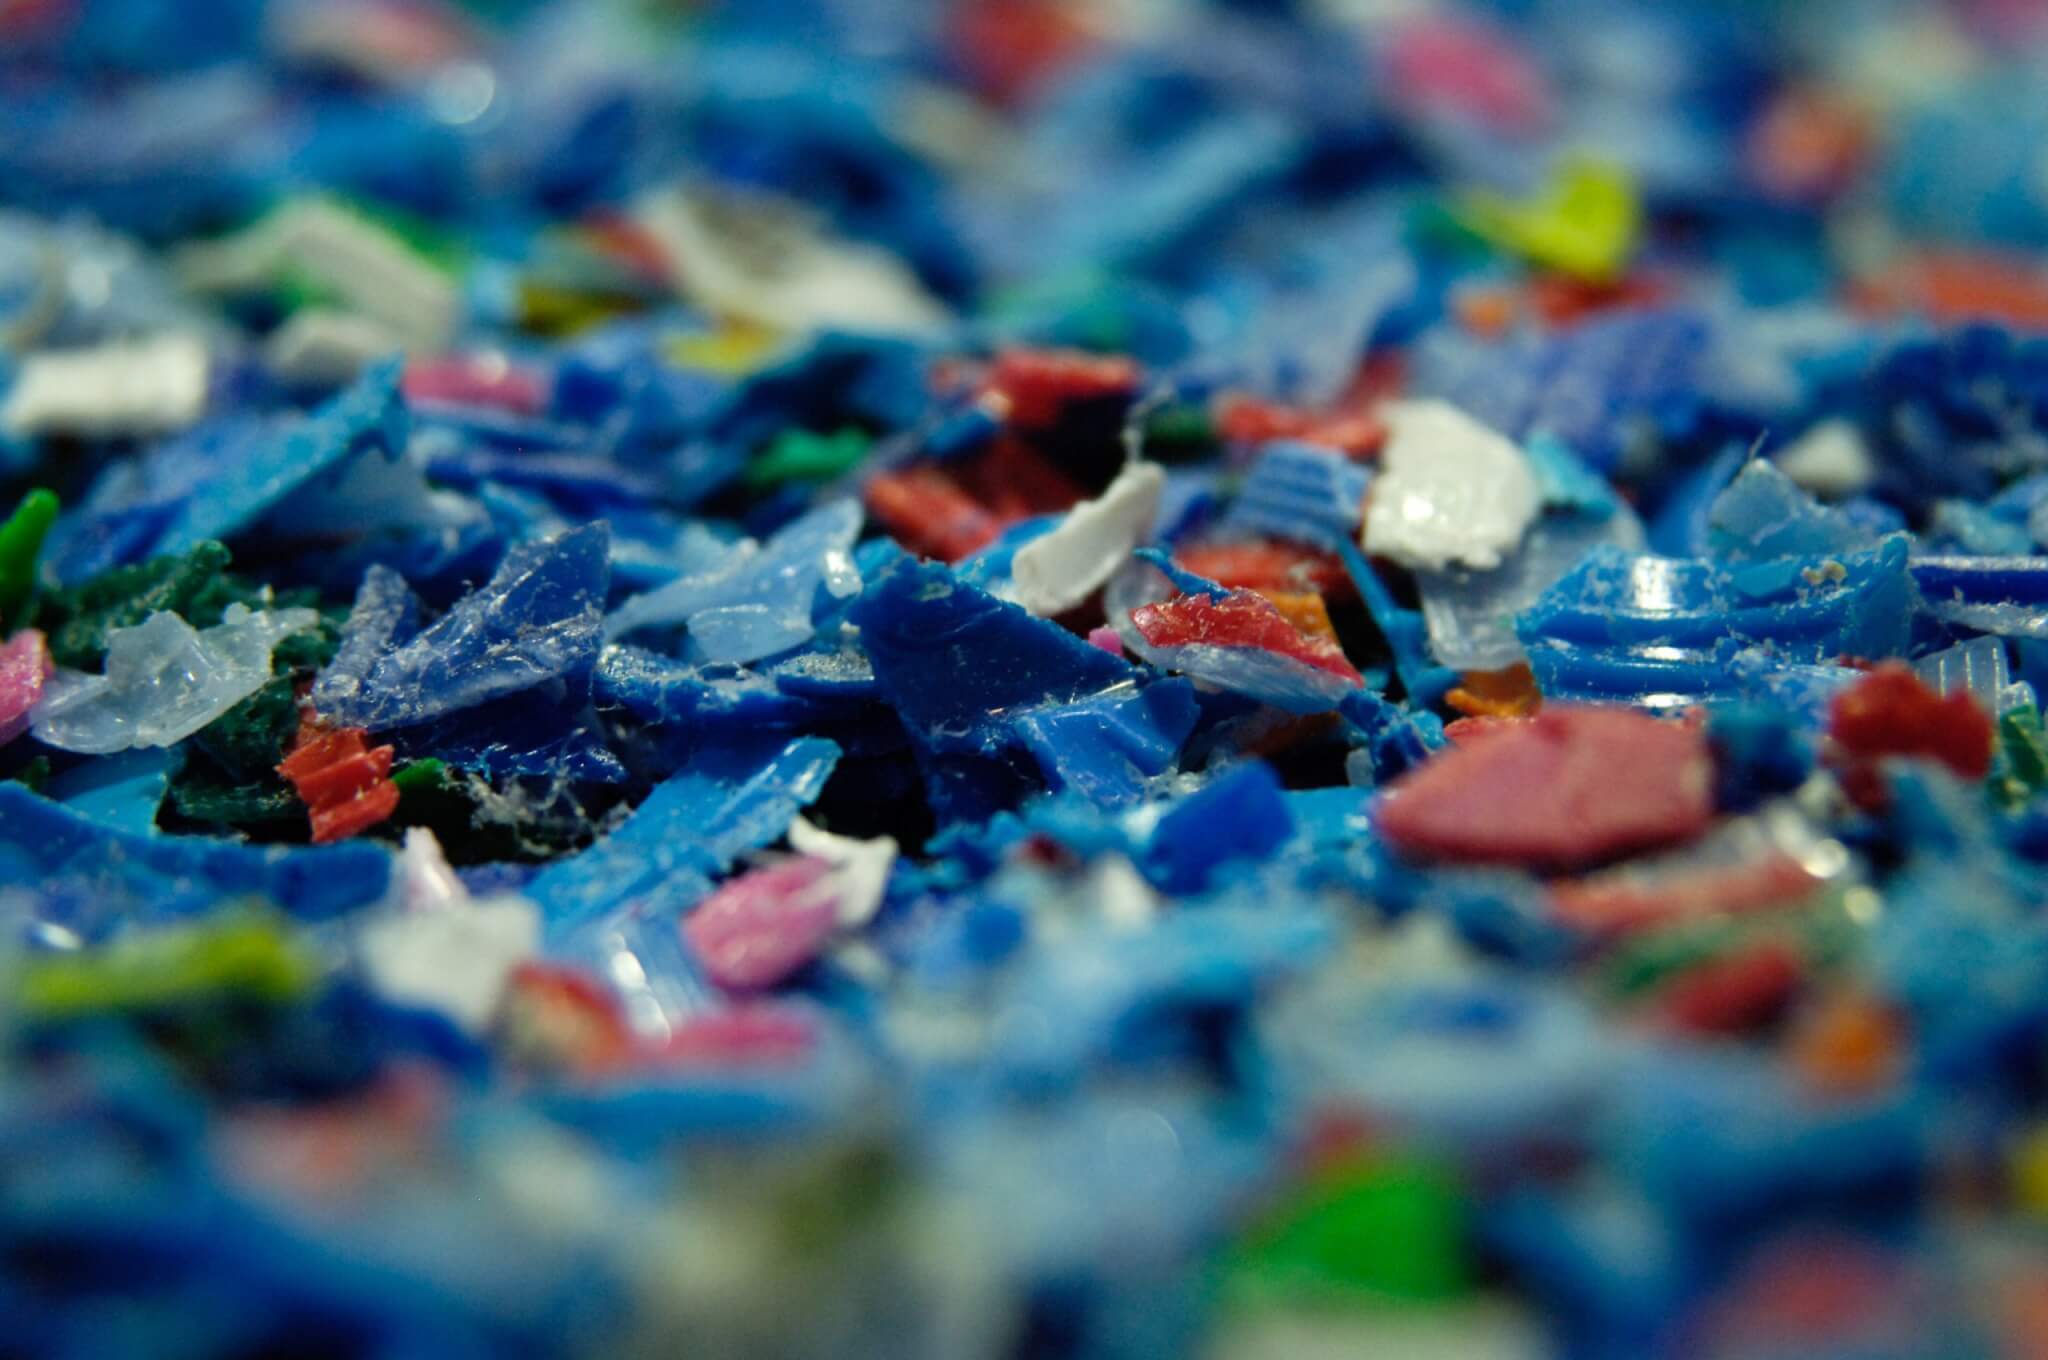 recyclage plastique palette bouchons bouteilles dechets